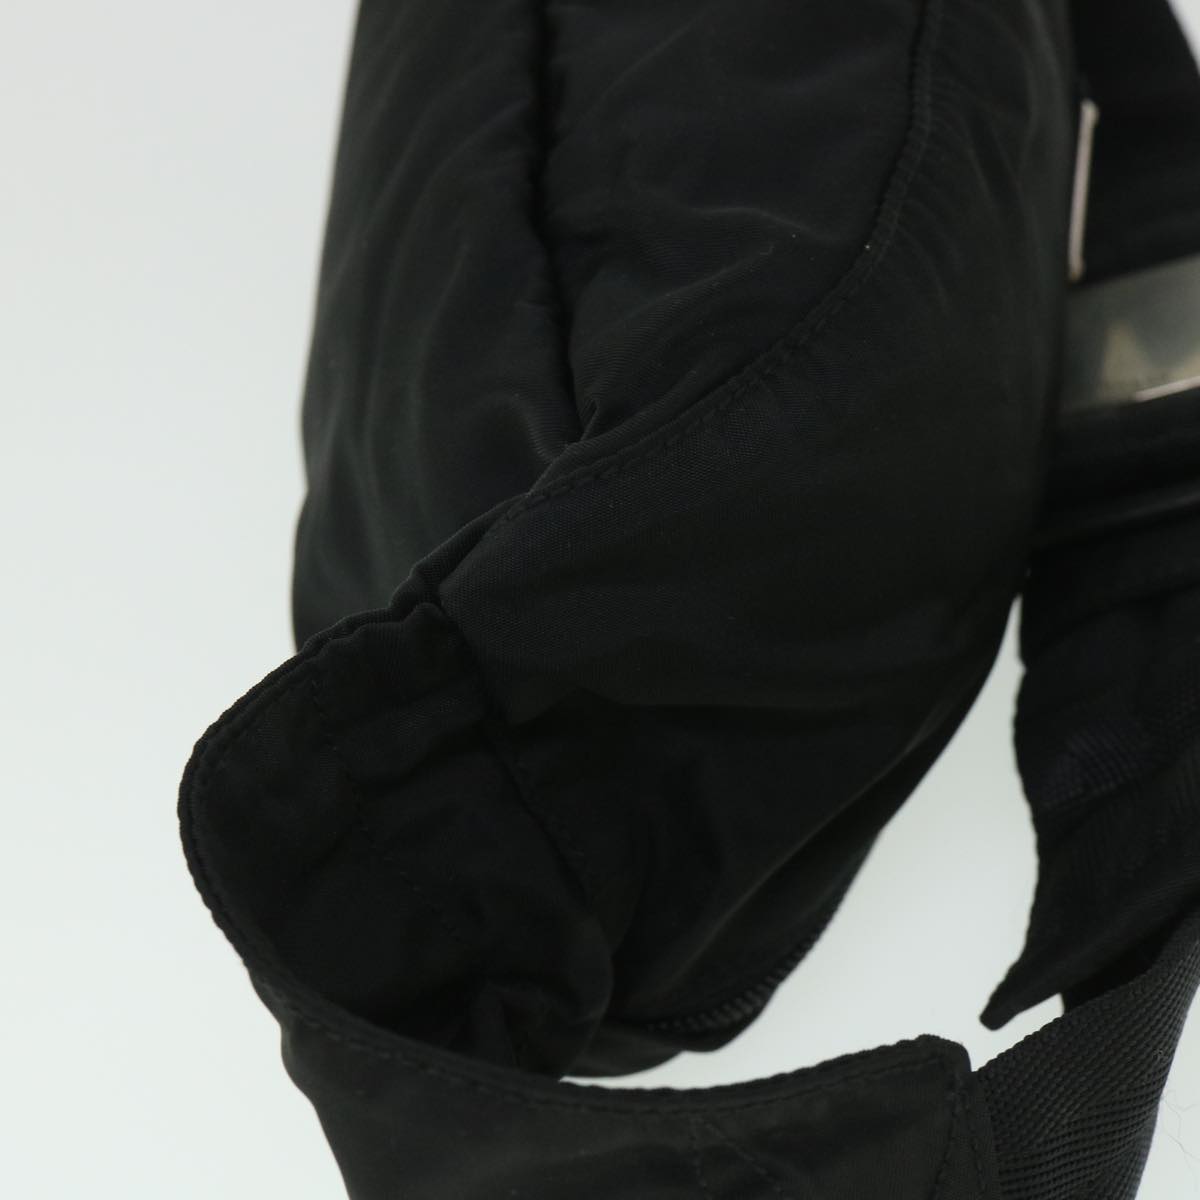 PRADA Waist bag Nylon Black Auth 54122